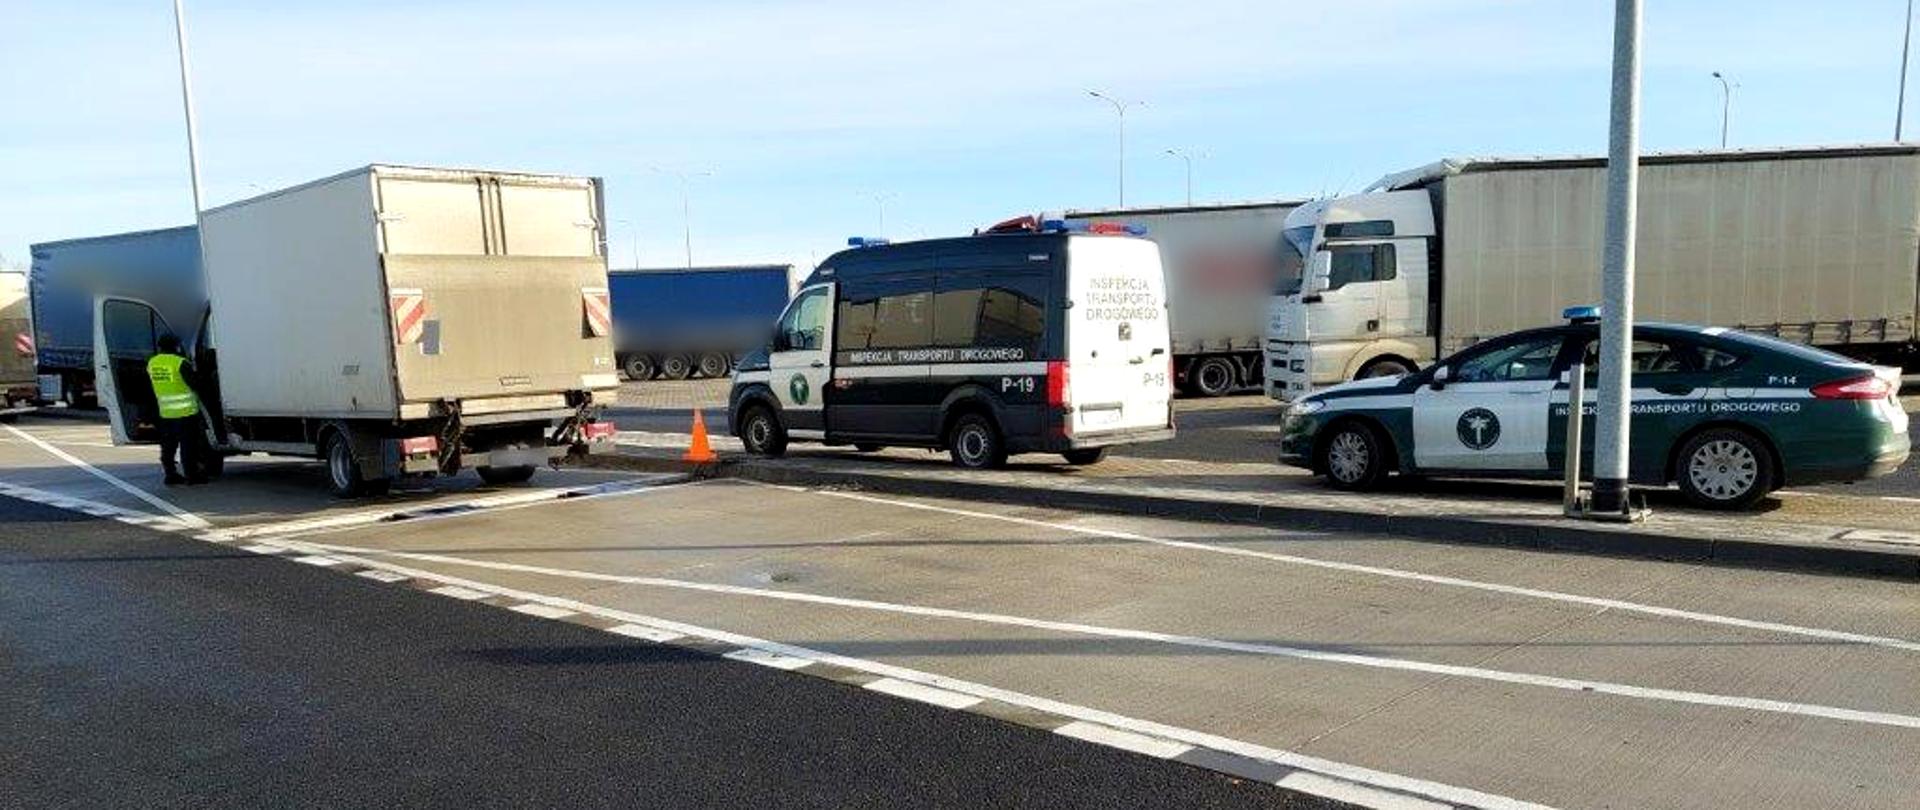 Kontrola dolnośląskiej ITD w punkcie wagowym przy S3. Po lewej jeden z zatrzymanych dostawczaków, przy nim stoi inspektor ITD. Po prawej dwa samochody Inspekcji Transportu Drogowego. W tle zaparkowane przy drodze ekspresowej nr 3 samochody ciężarowe.